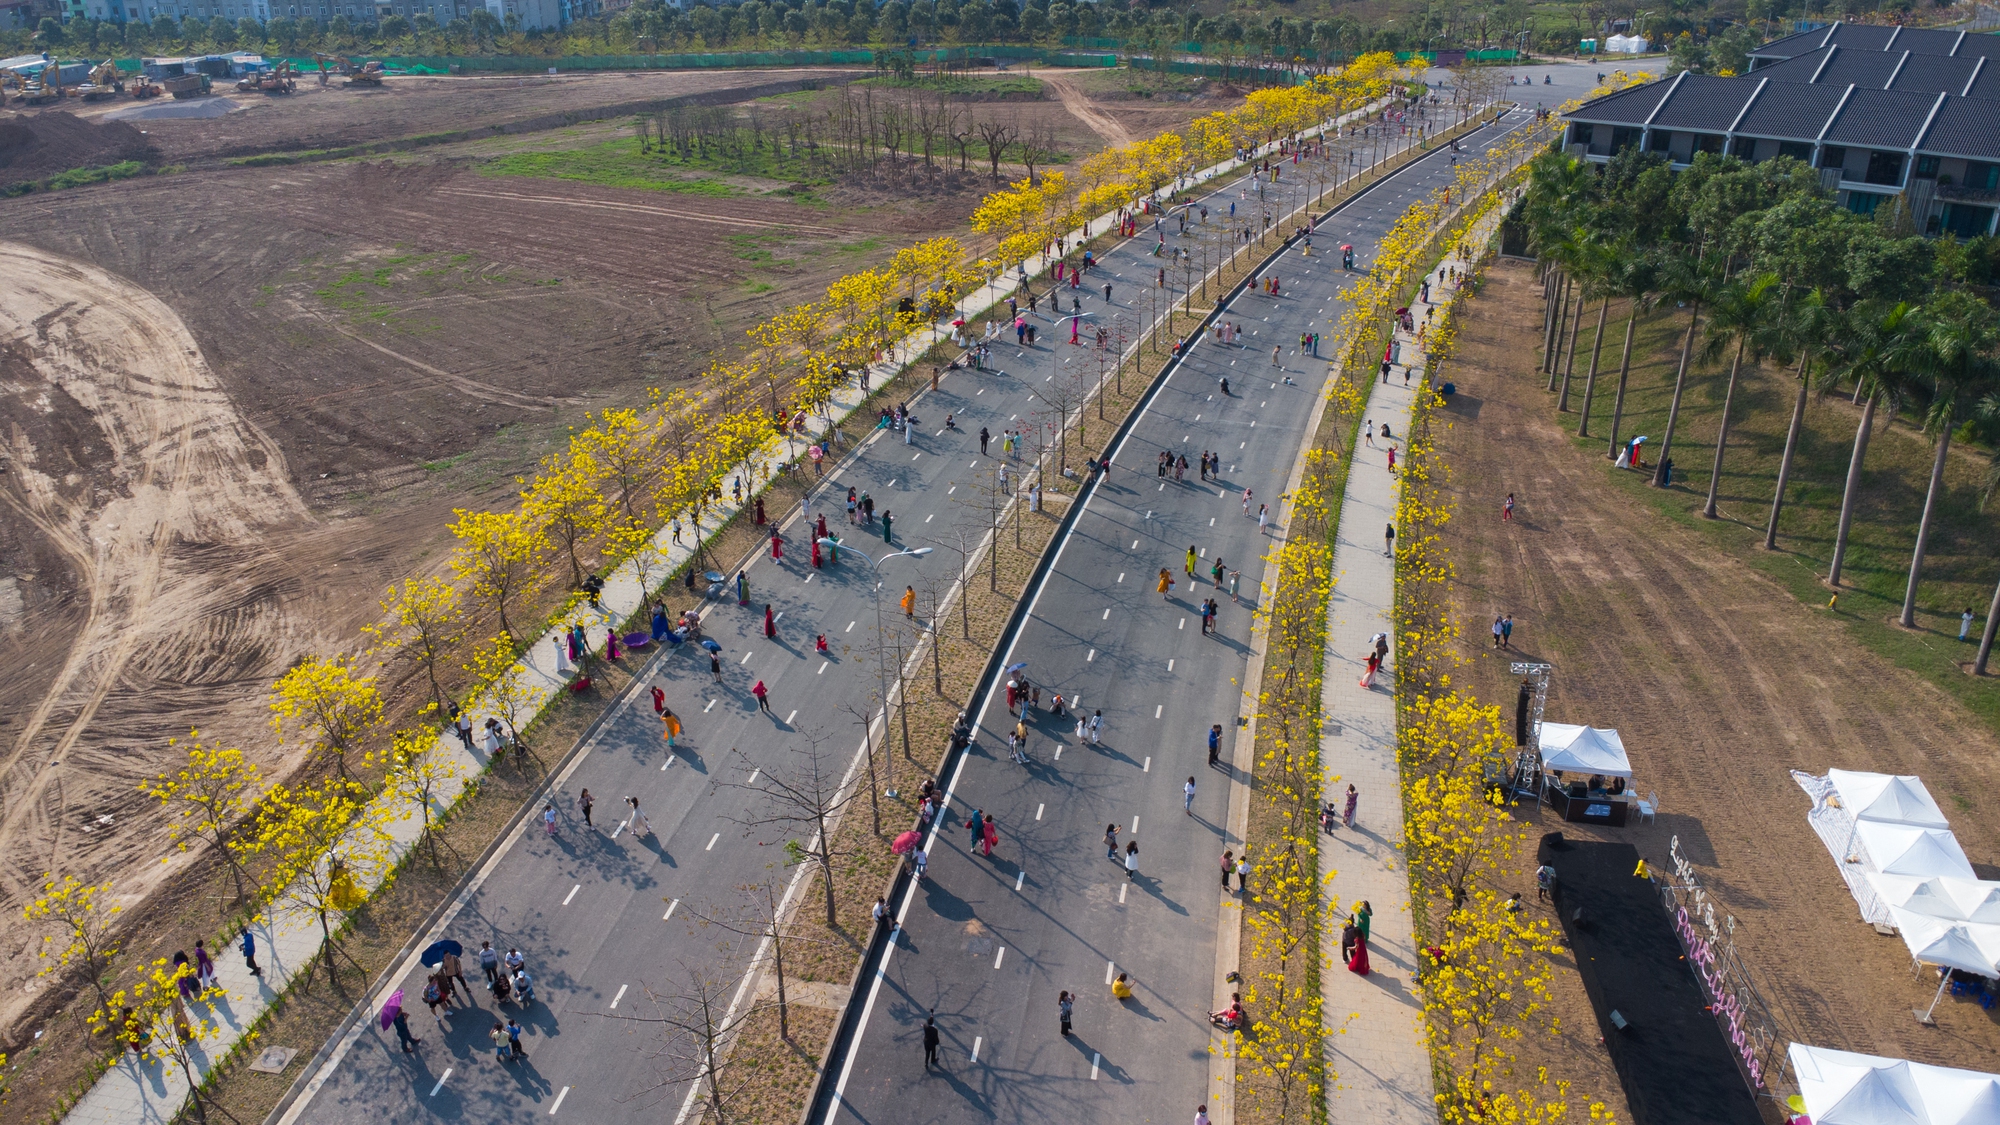 'Biển người' chen chân chụp ảnh tại con đường hoa vàng hot nhất Hà Nội - Ảnh 1.